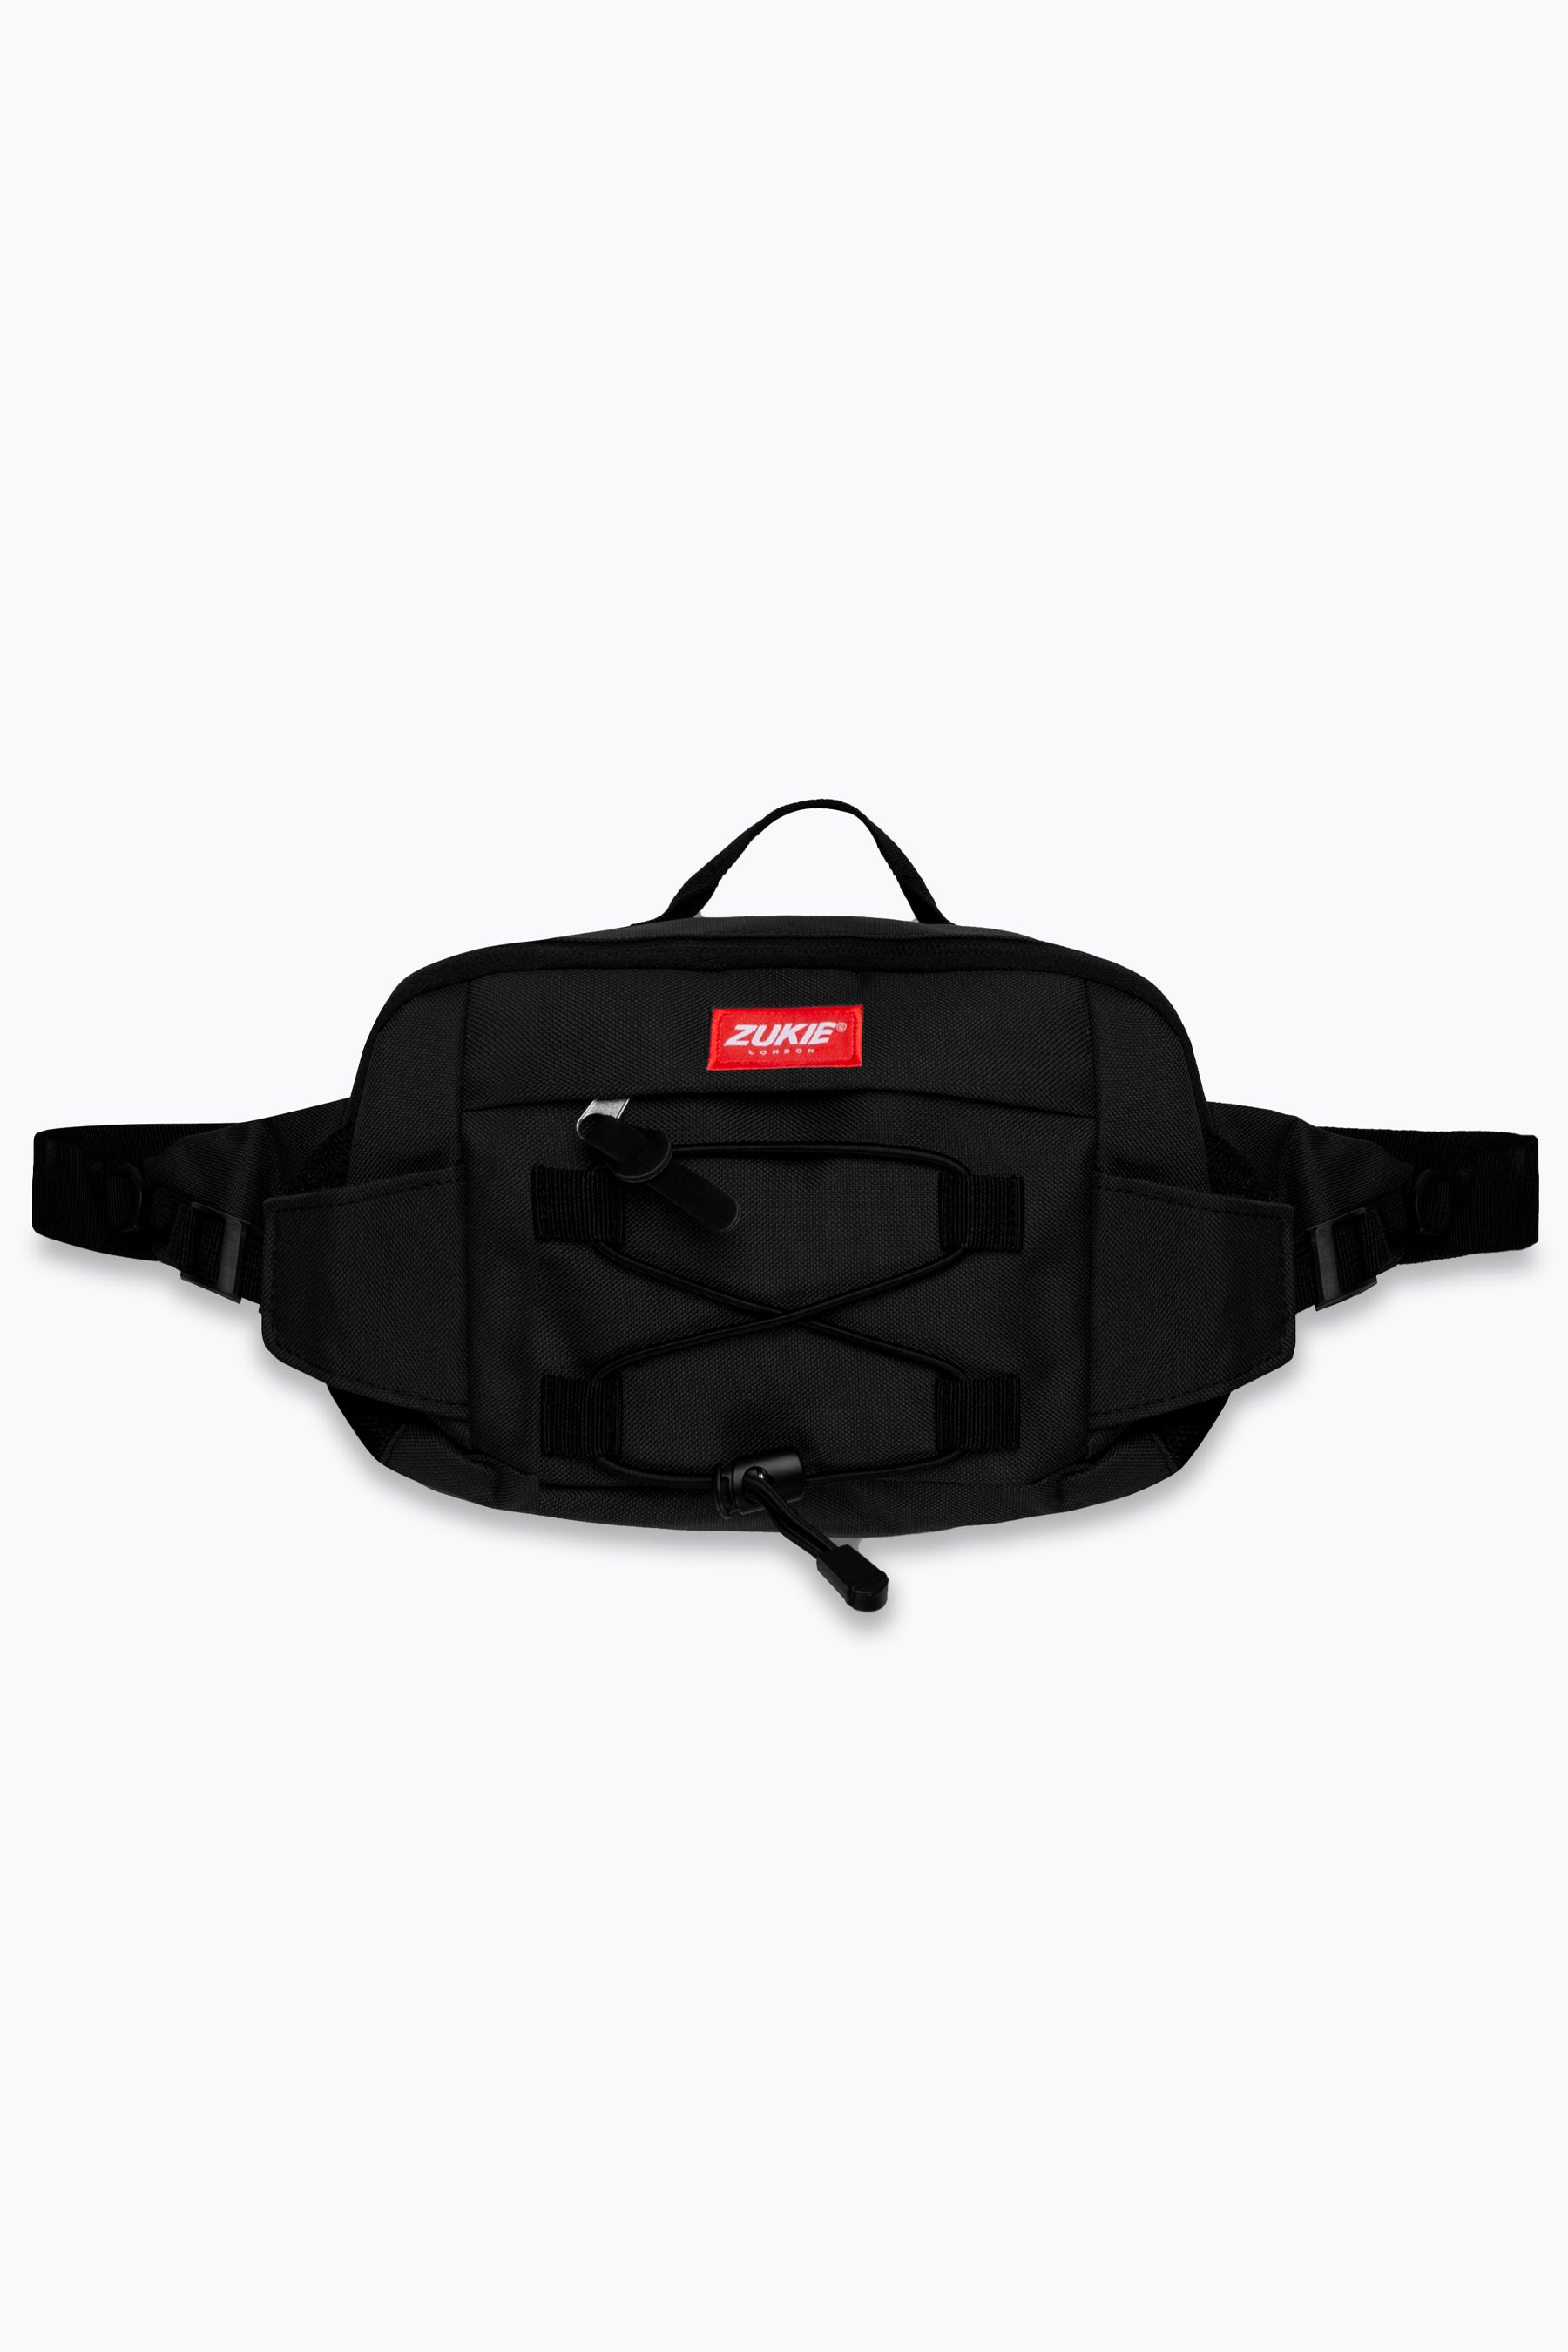 zukie black camera skate bag